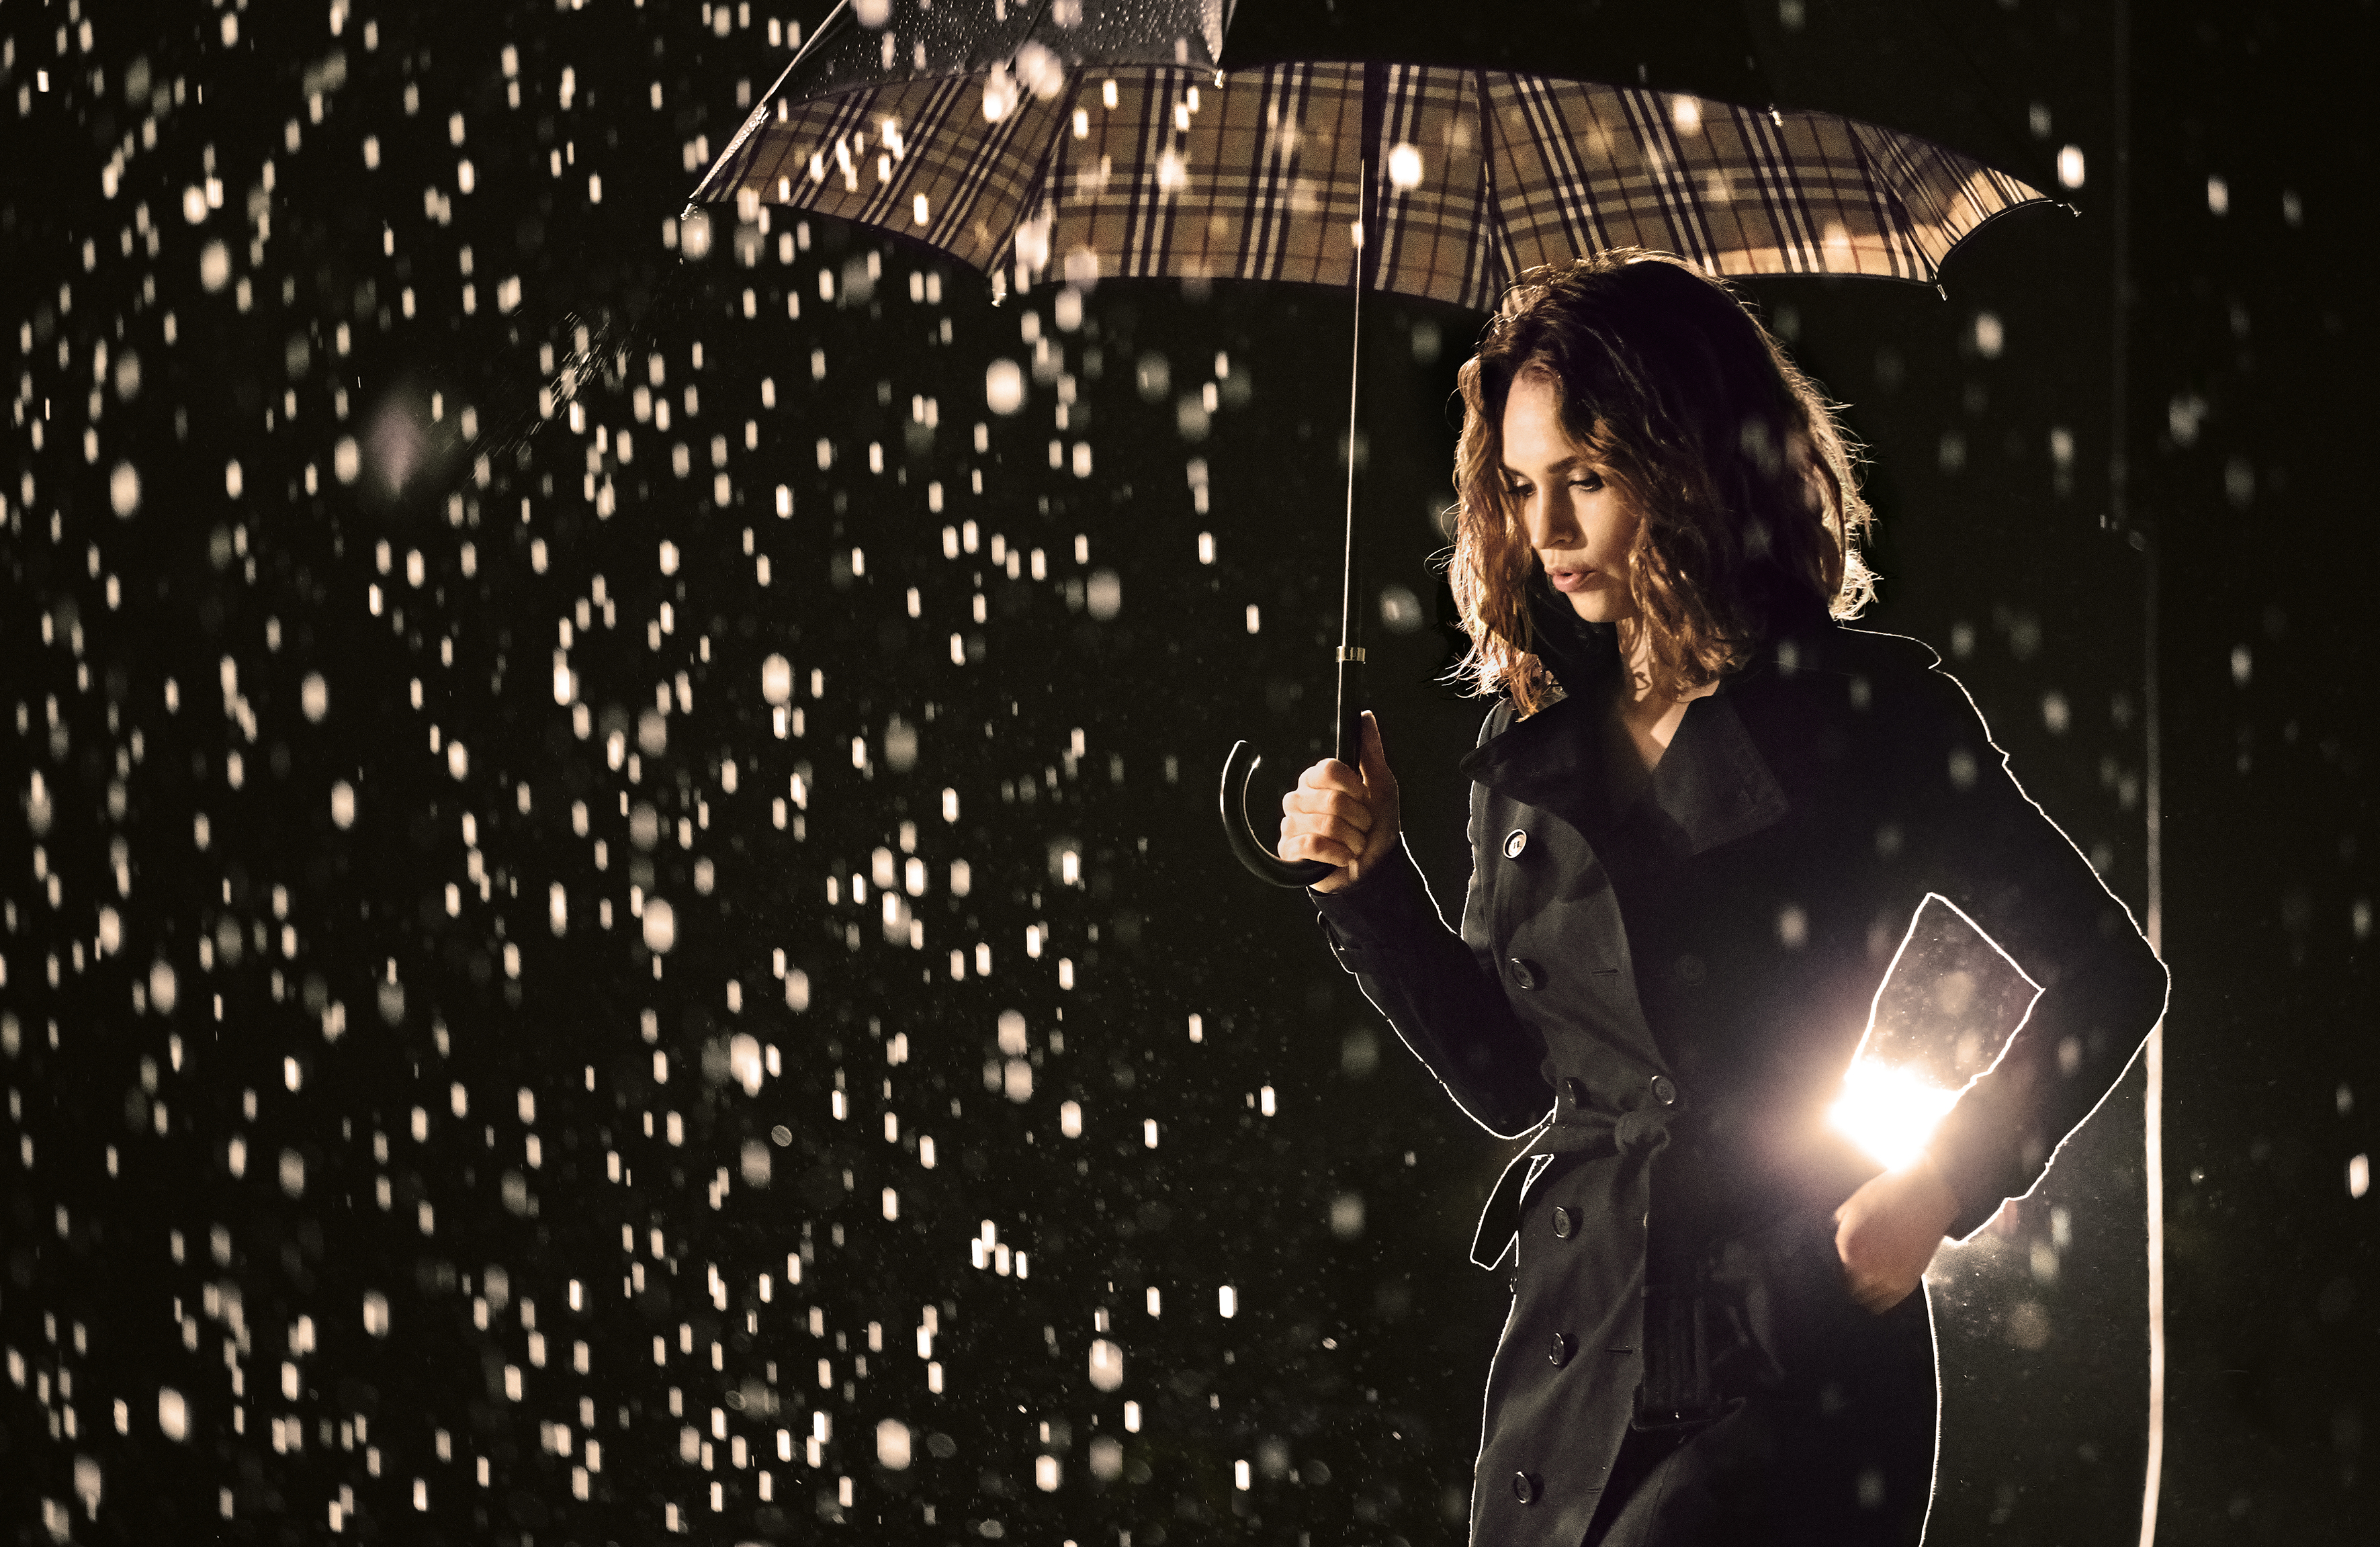 Хороший свет в дождь. Девушка под дождем. Девушка дождь. Девушка под зонтом. Фотосессия в дождь.